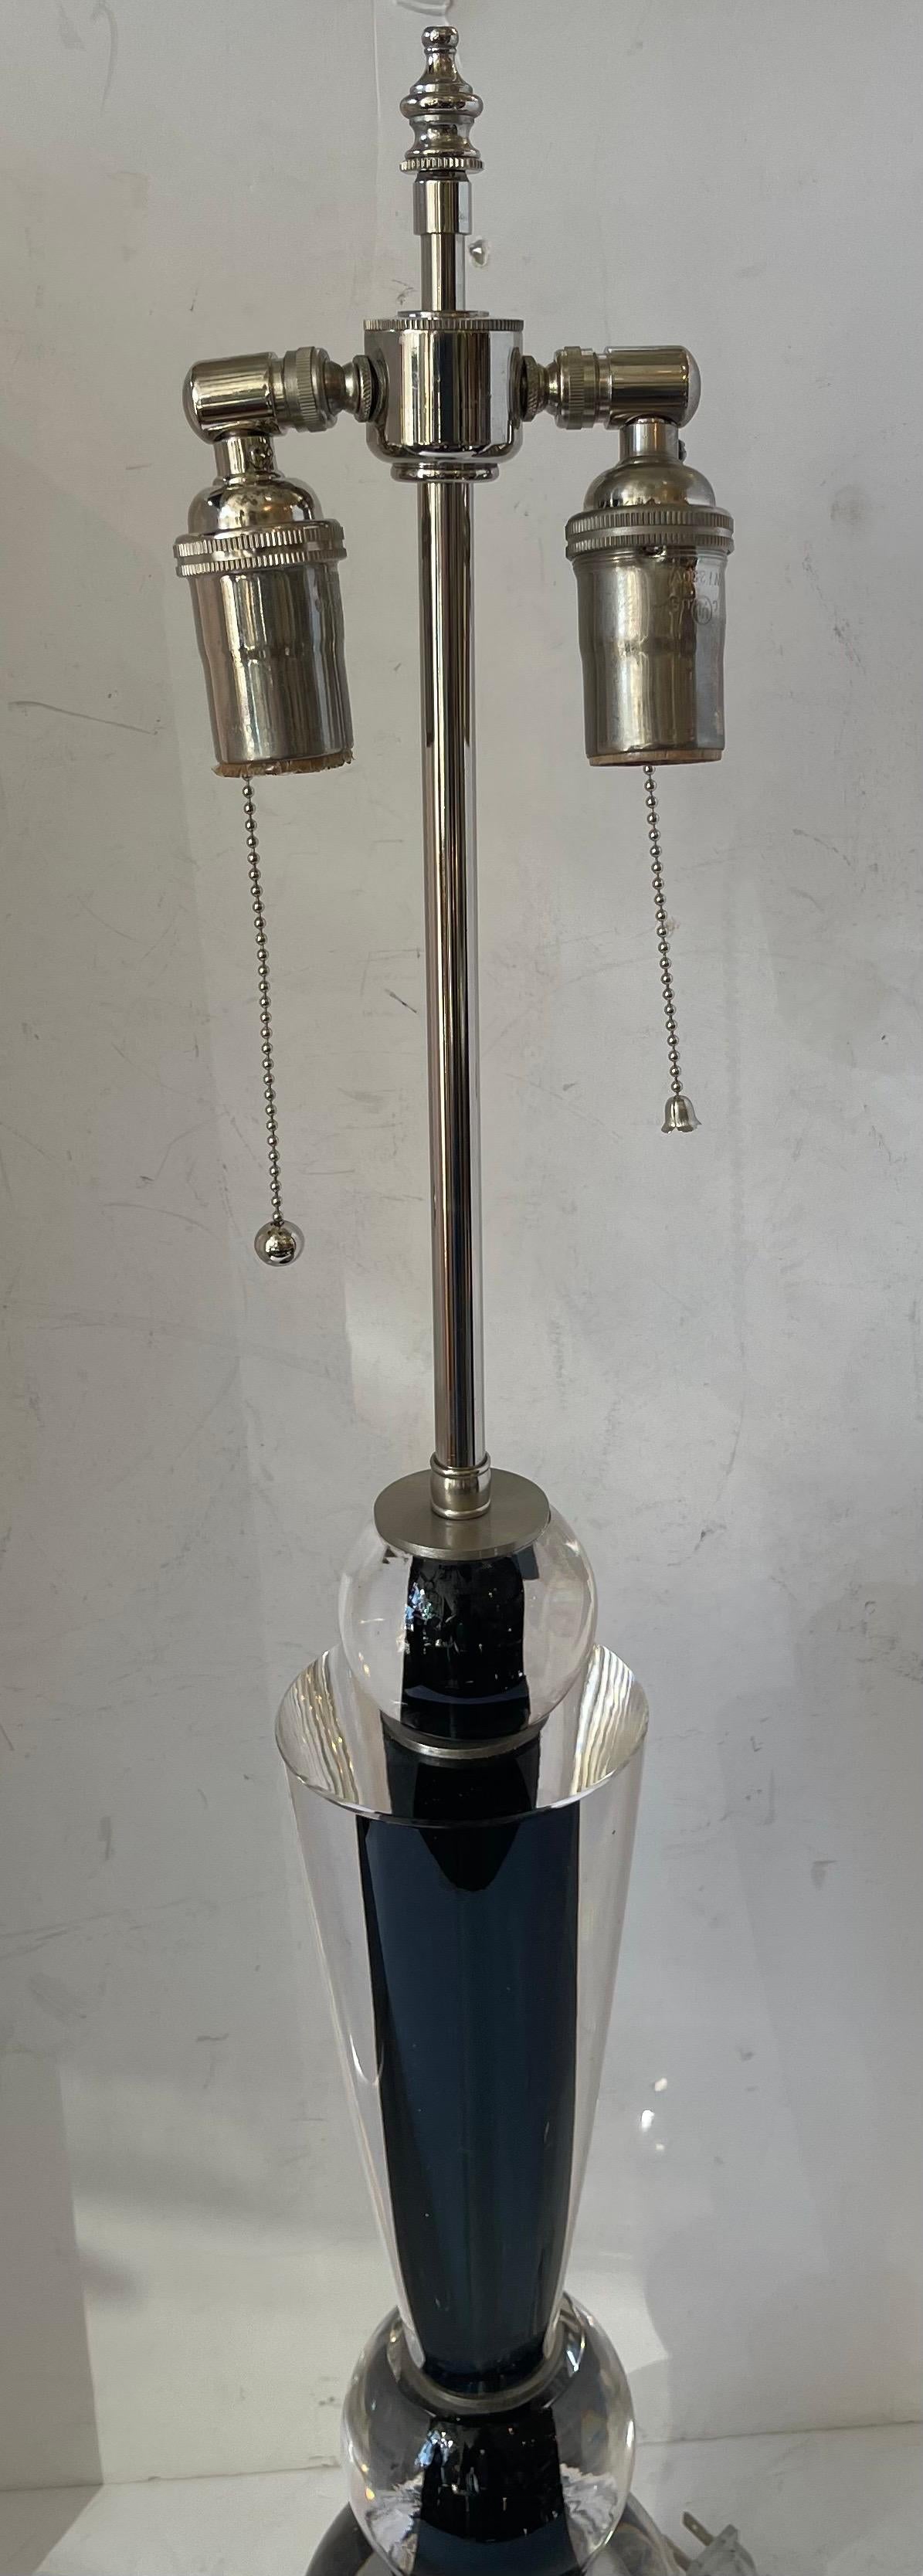 Merveilleuse lampe de table en verre clair noir de Murano / Vénitien Lorin Marsh, datant du milieu du siècle dernier, recâblée avec deux douilles en nickel Edison.
L'autocollant original de la salle d'exposition est encore attaché avec le numéro